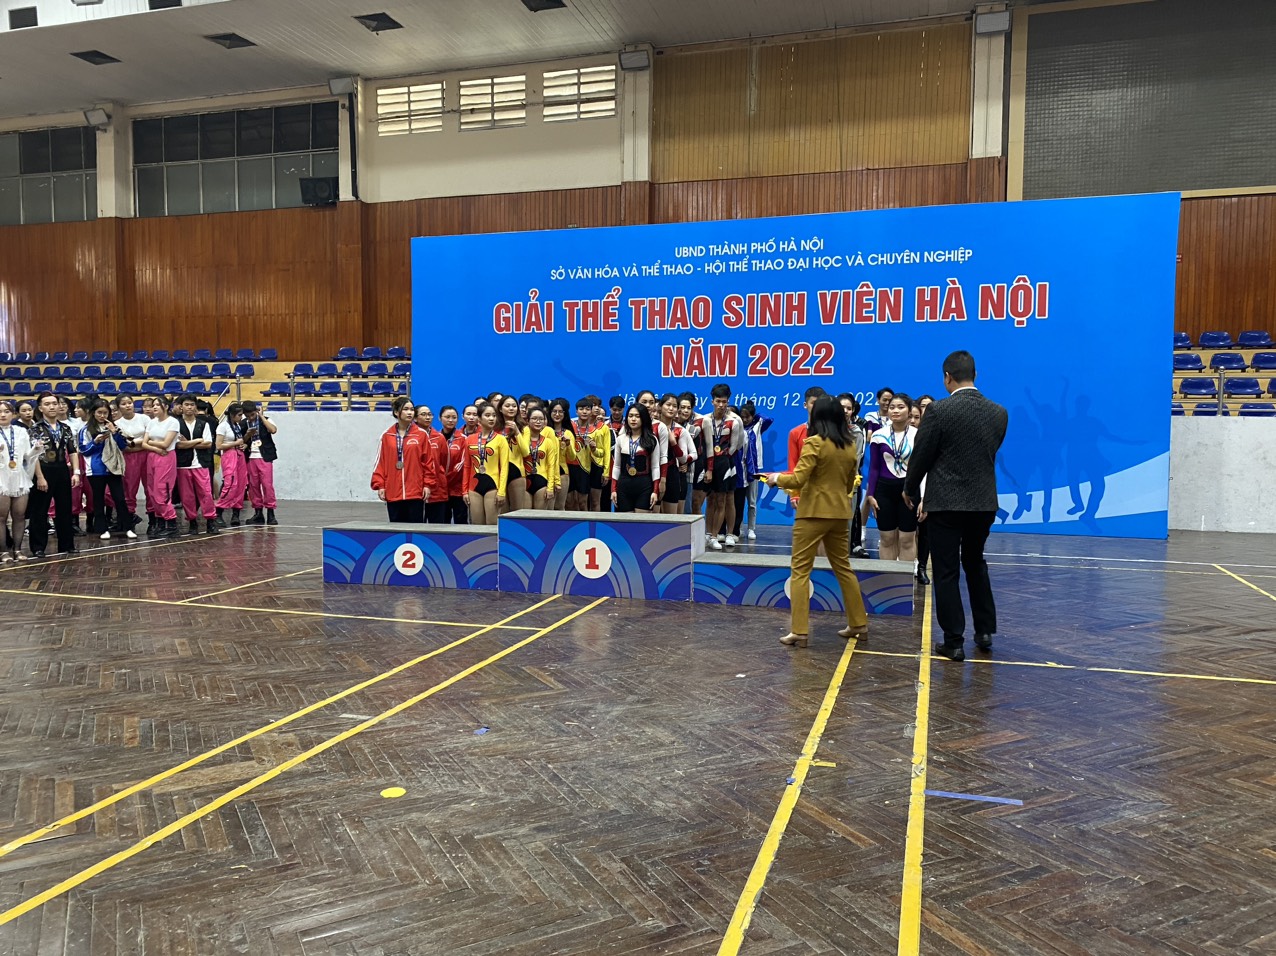 Đại học công nghiệp xuất sắc đạt giải cao tại giải thể thao sinh viên Hà Nội năm 2022